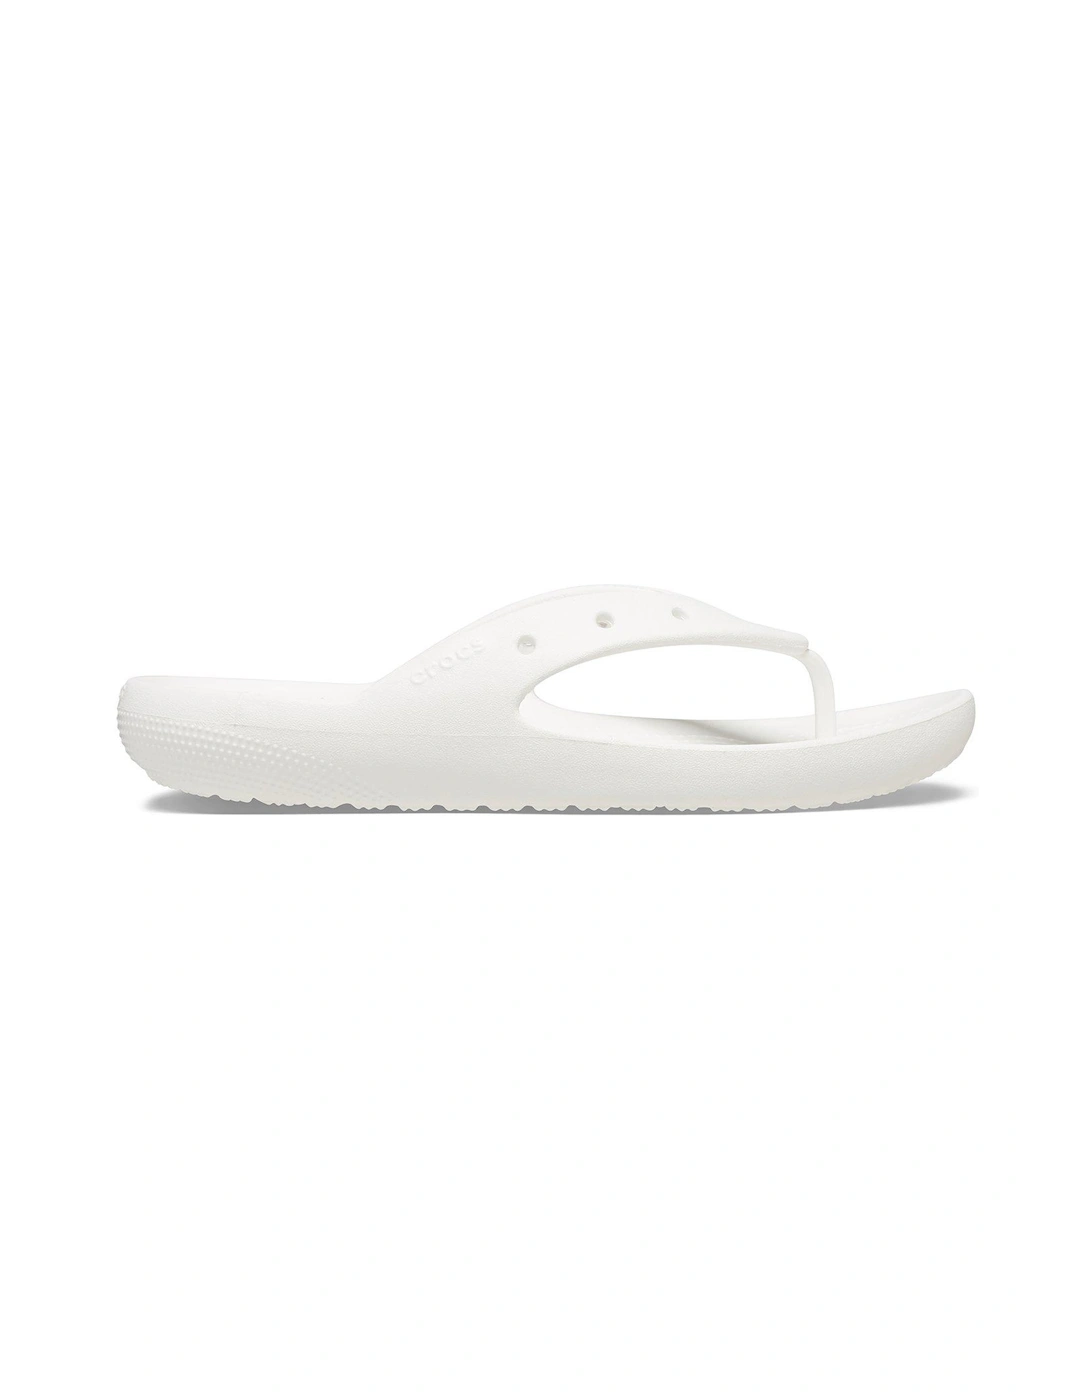 Classic Flip Sandal - White, 7 of 6